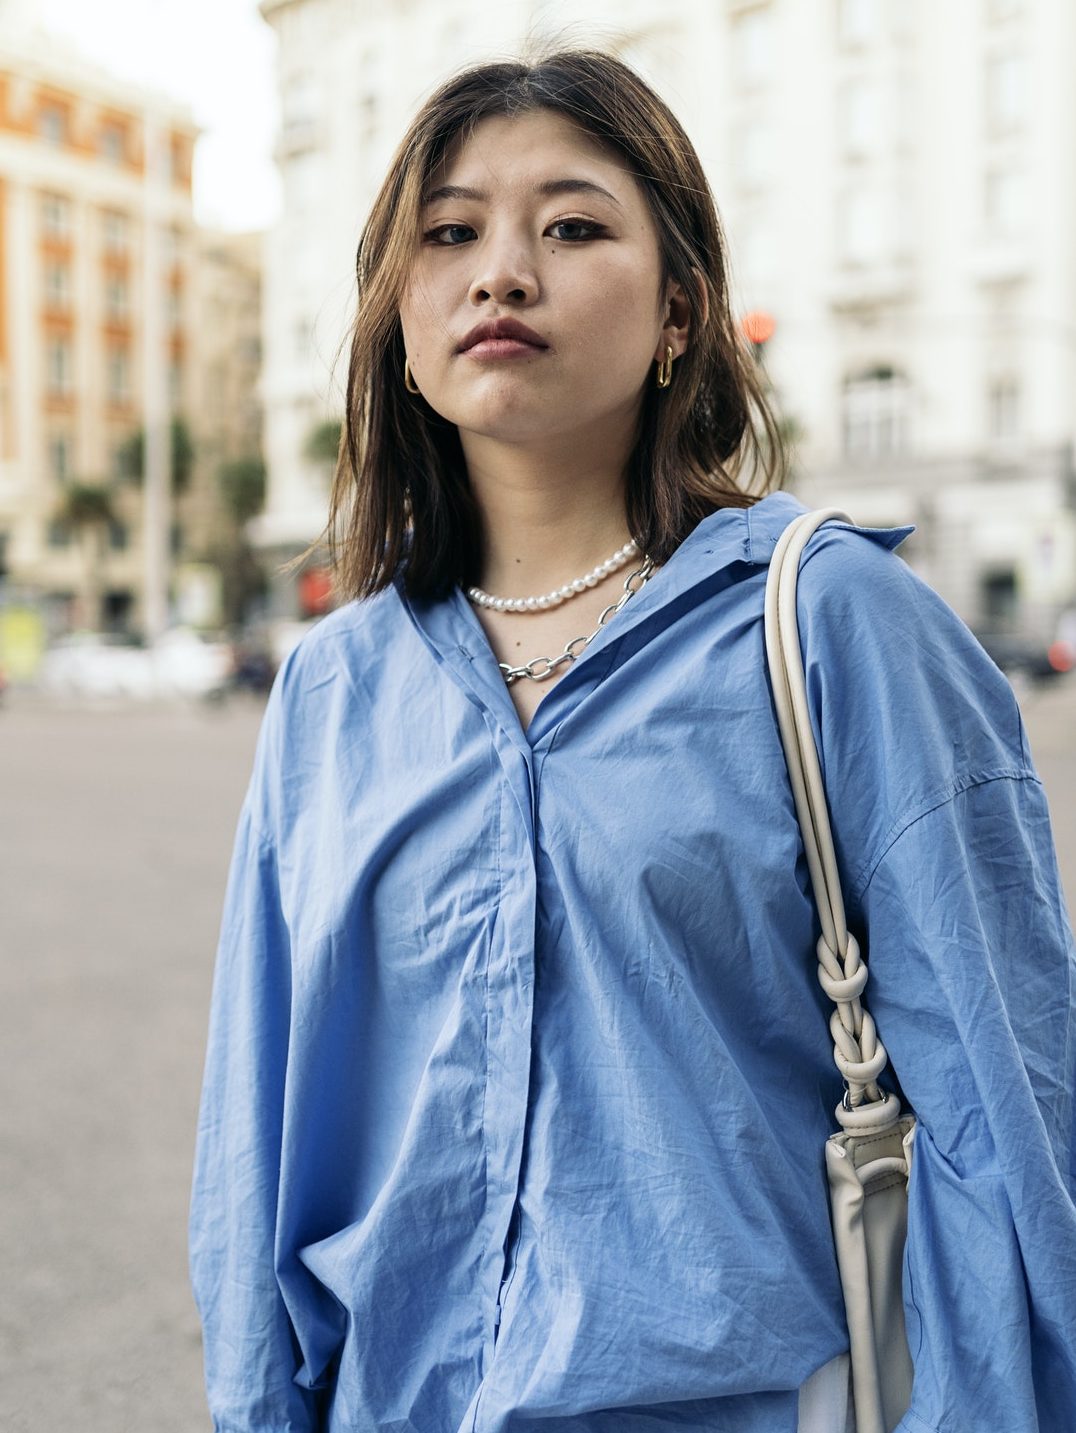 Confident Asian Woman Portrait